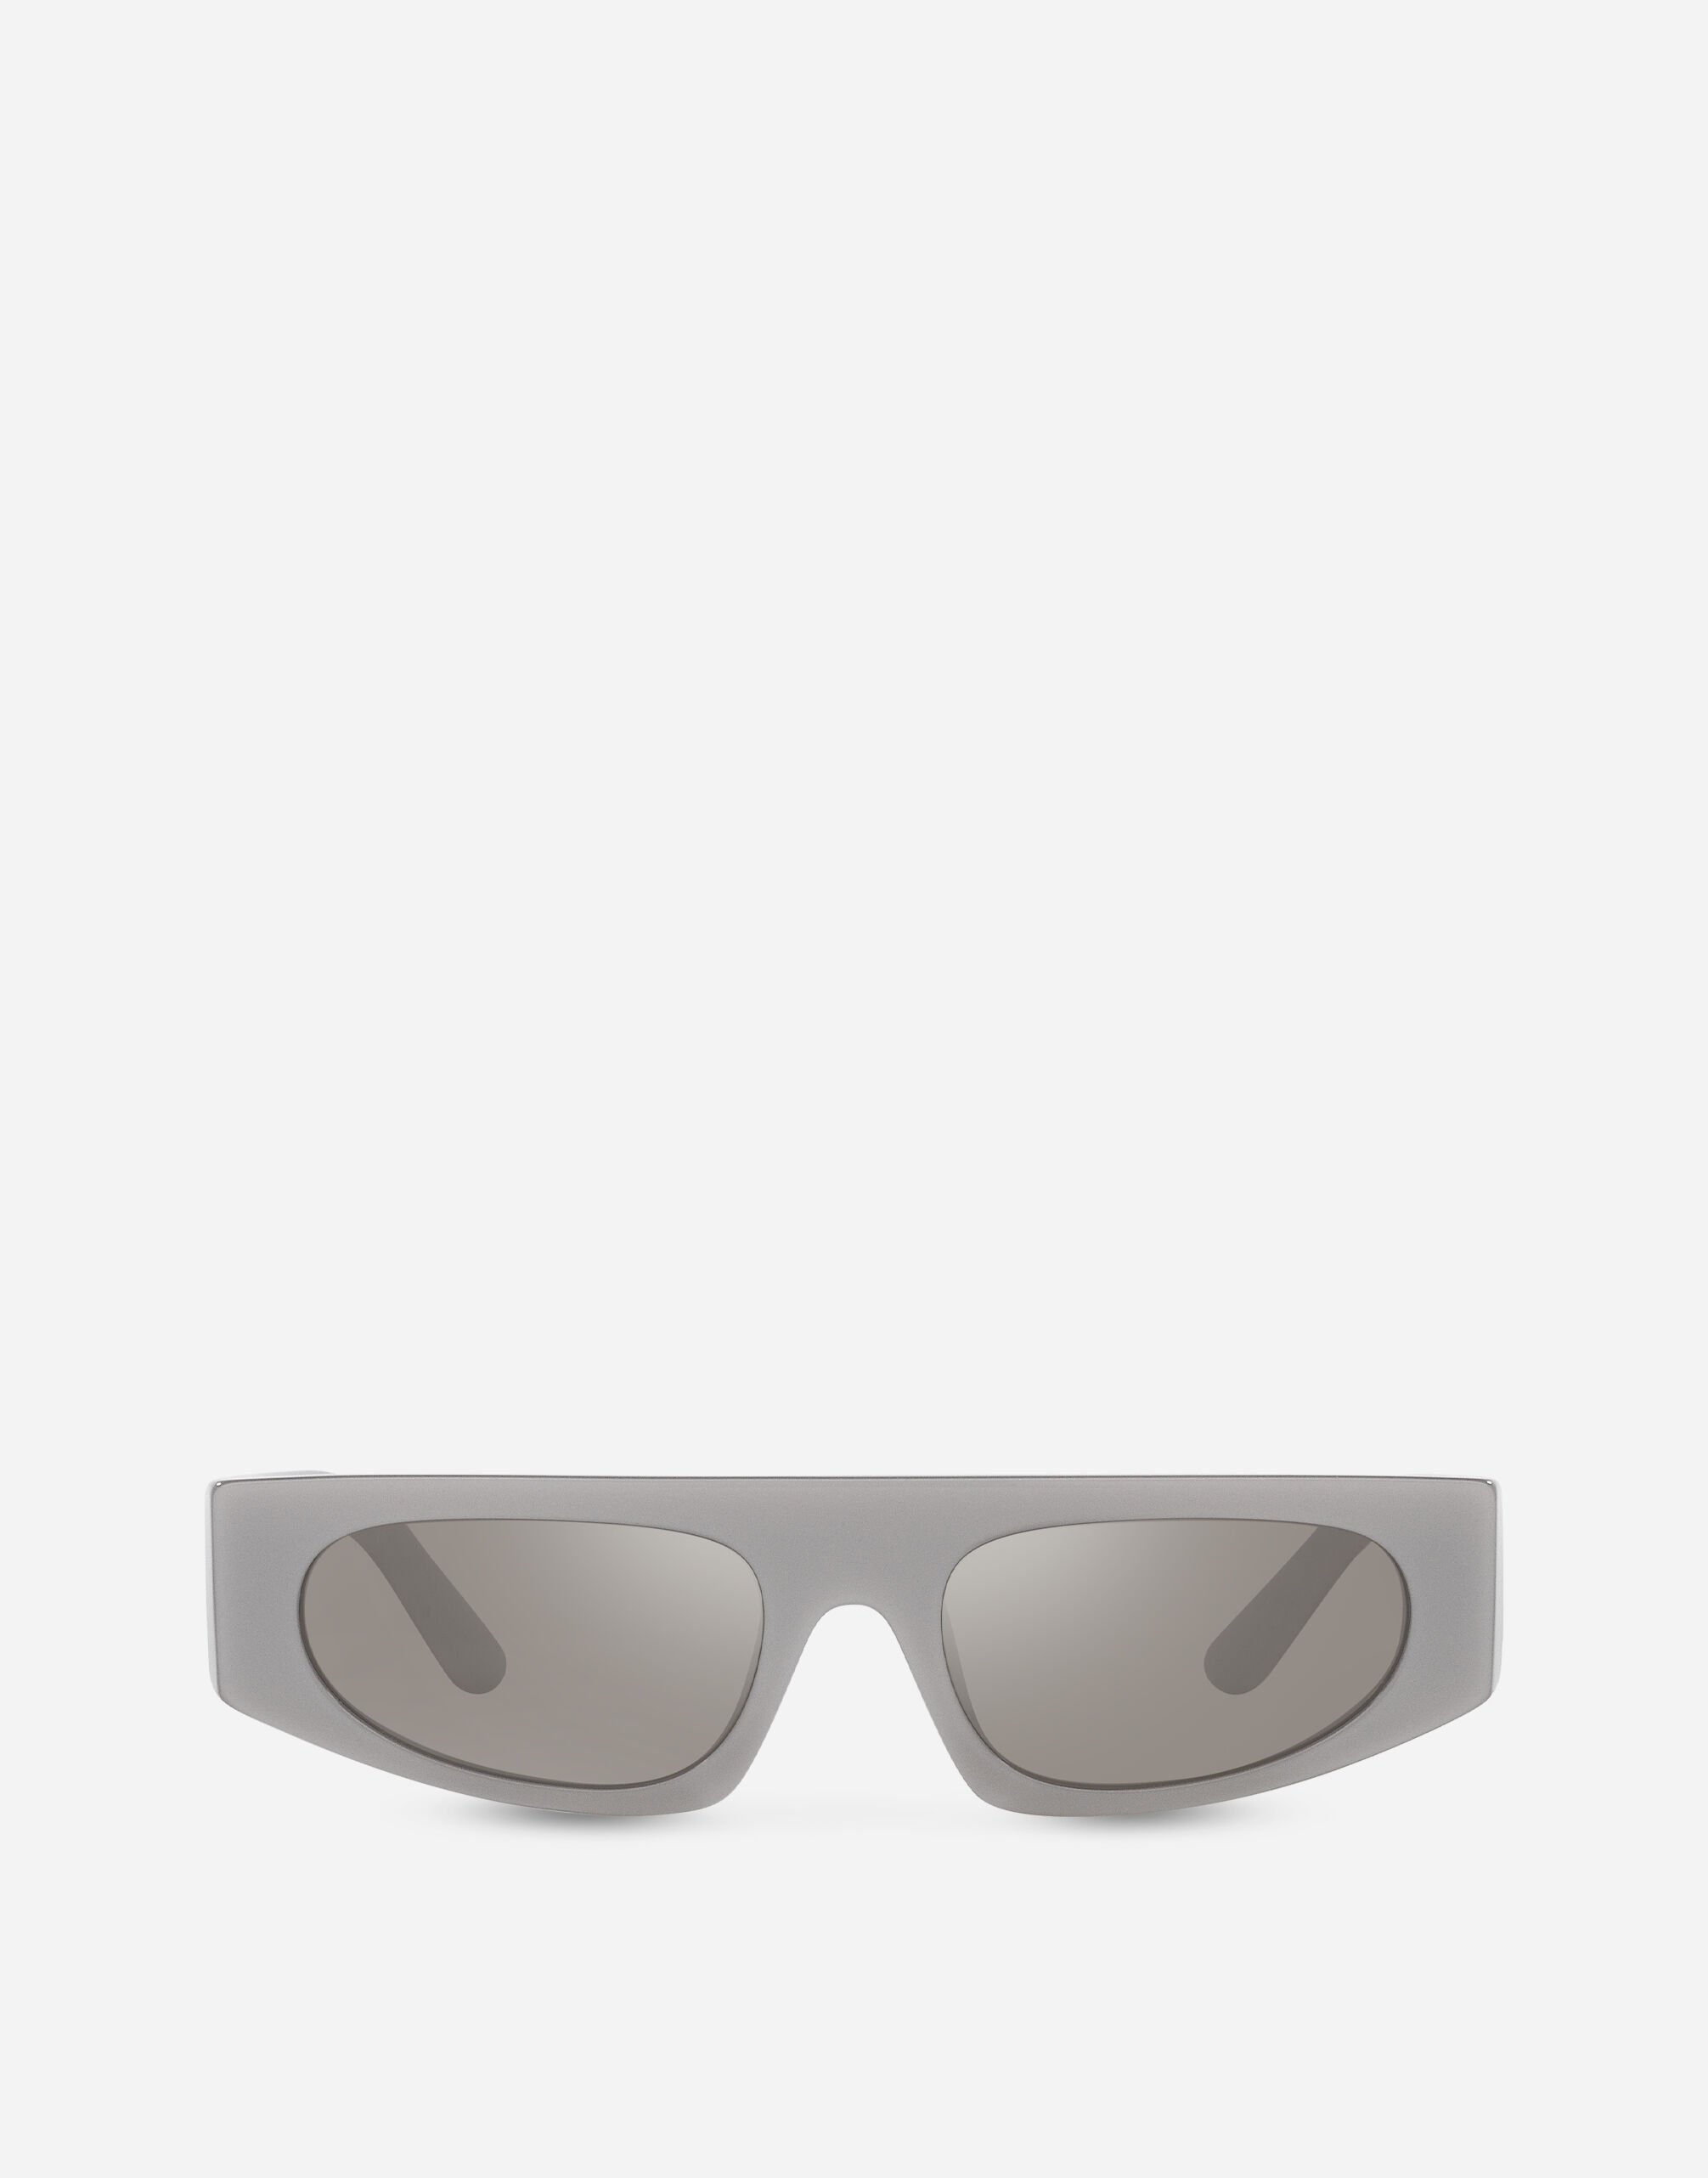 Dolce & Gabbana DG Crossed Sunglasses White VG600JVN287